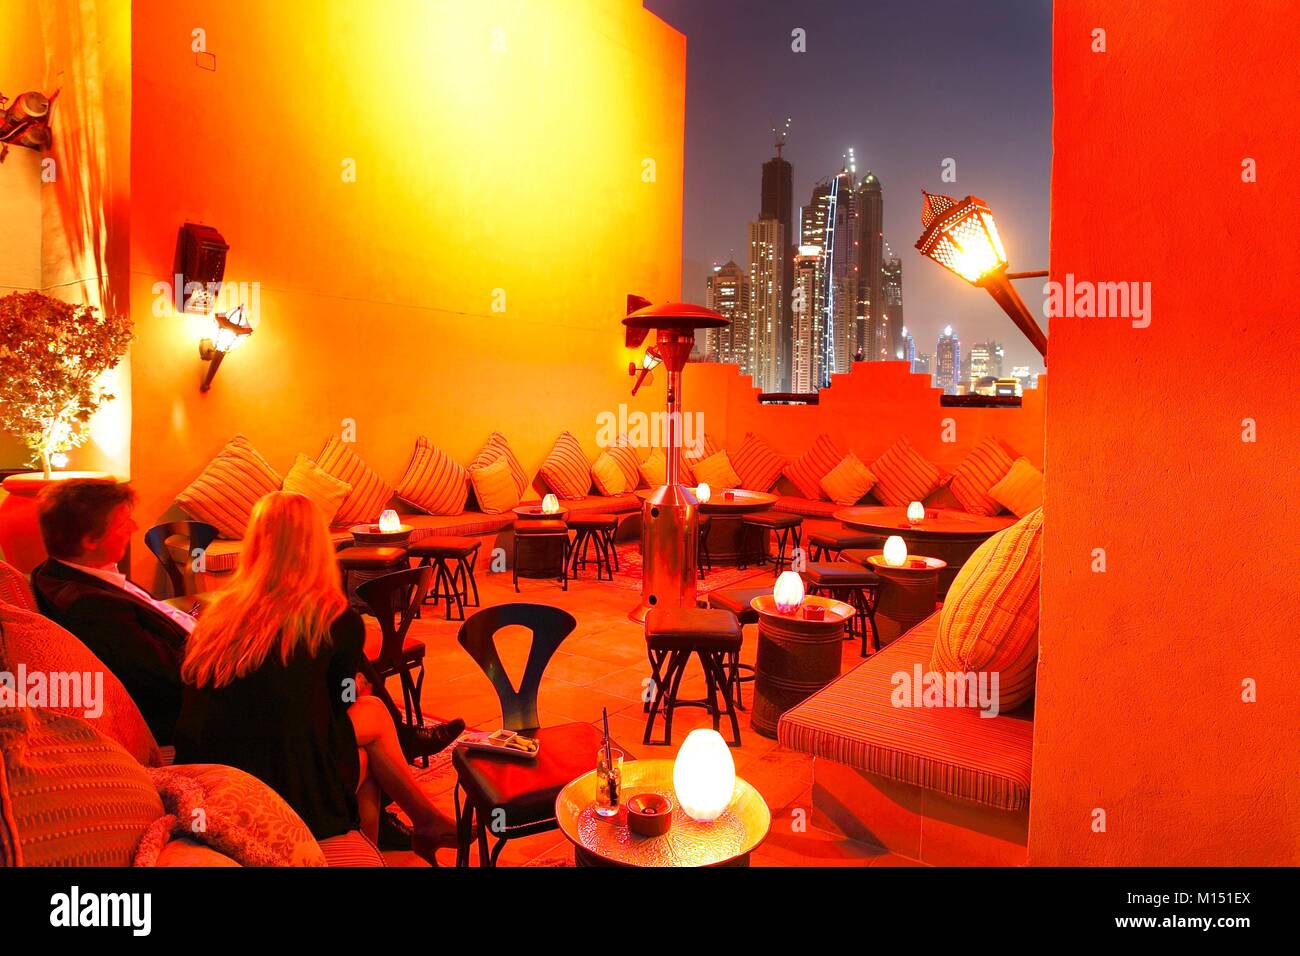 Emirats arabes unis, dubaï, seul et unique hôtel Mirage Banque D'Images